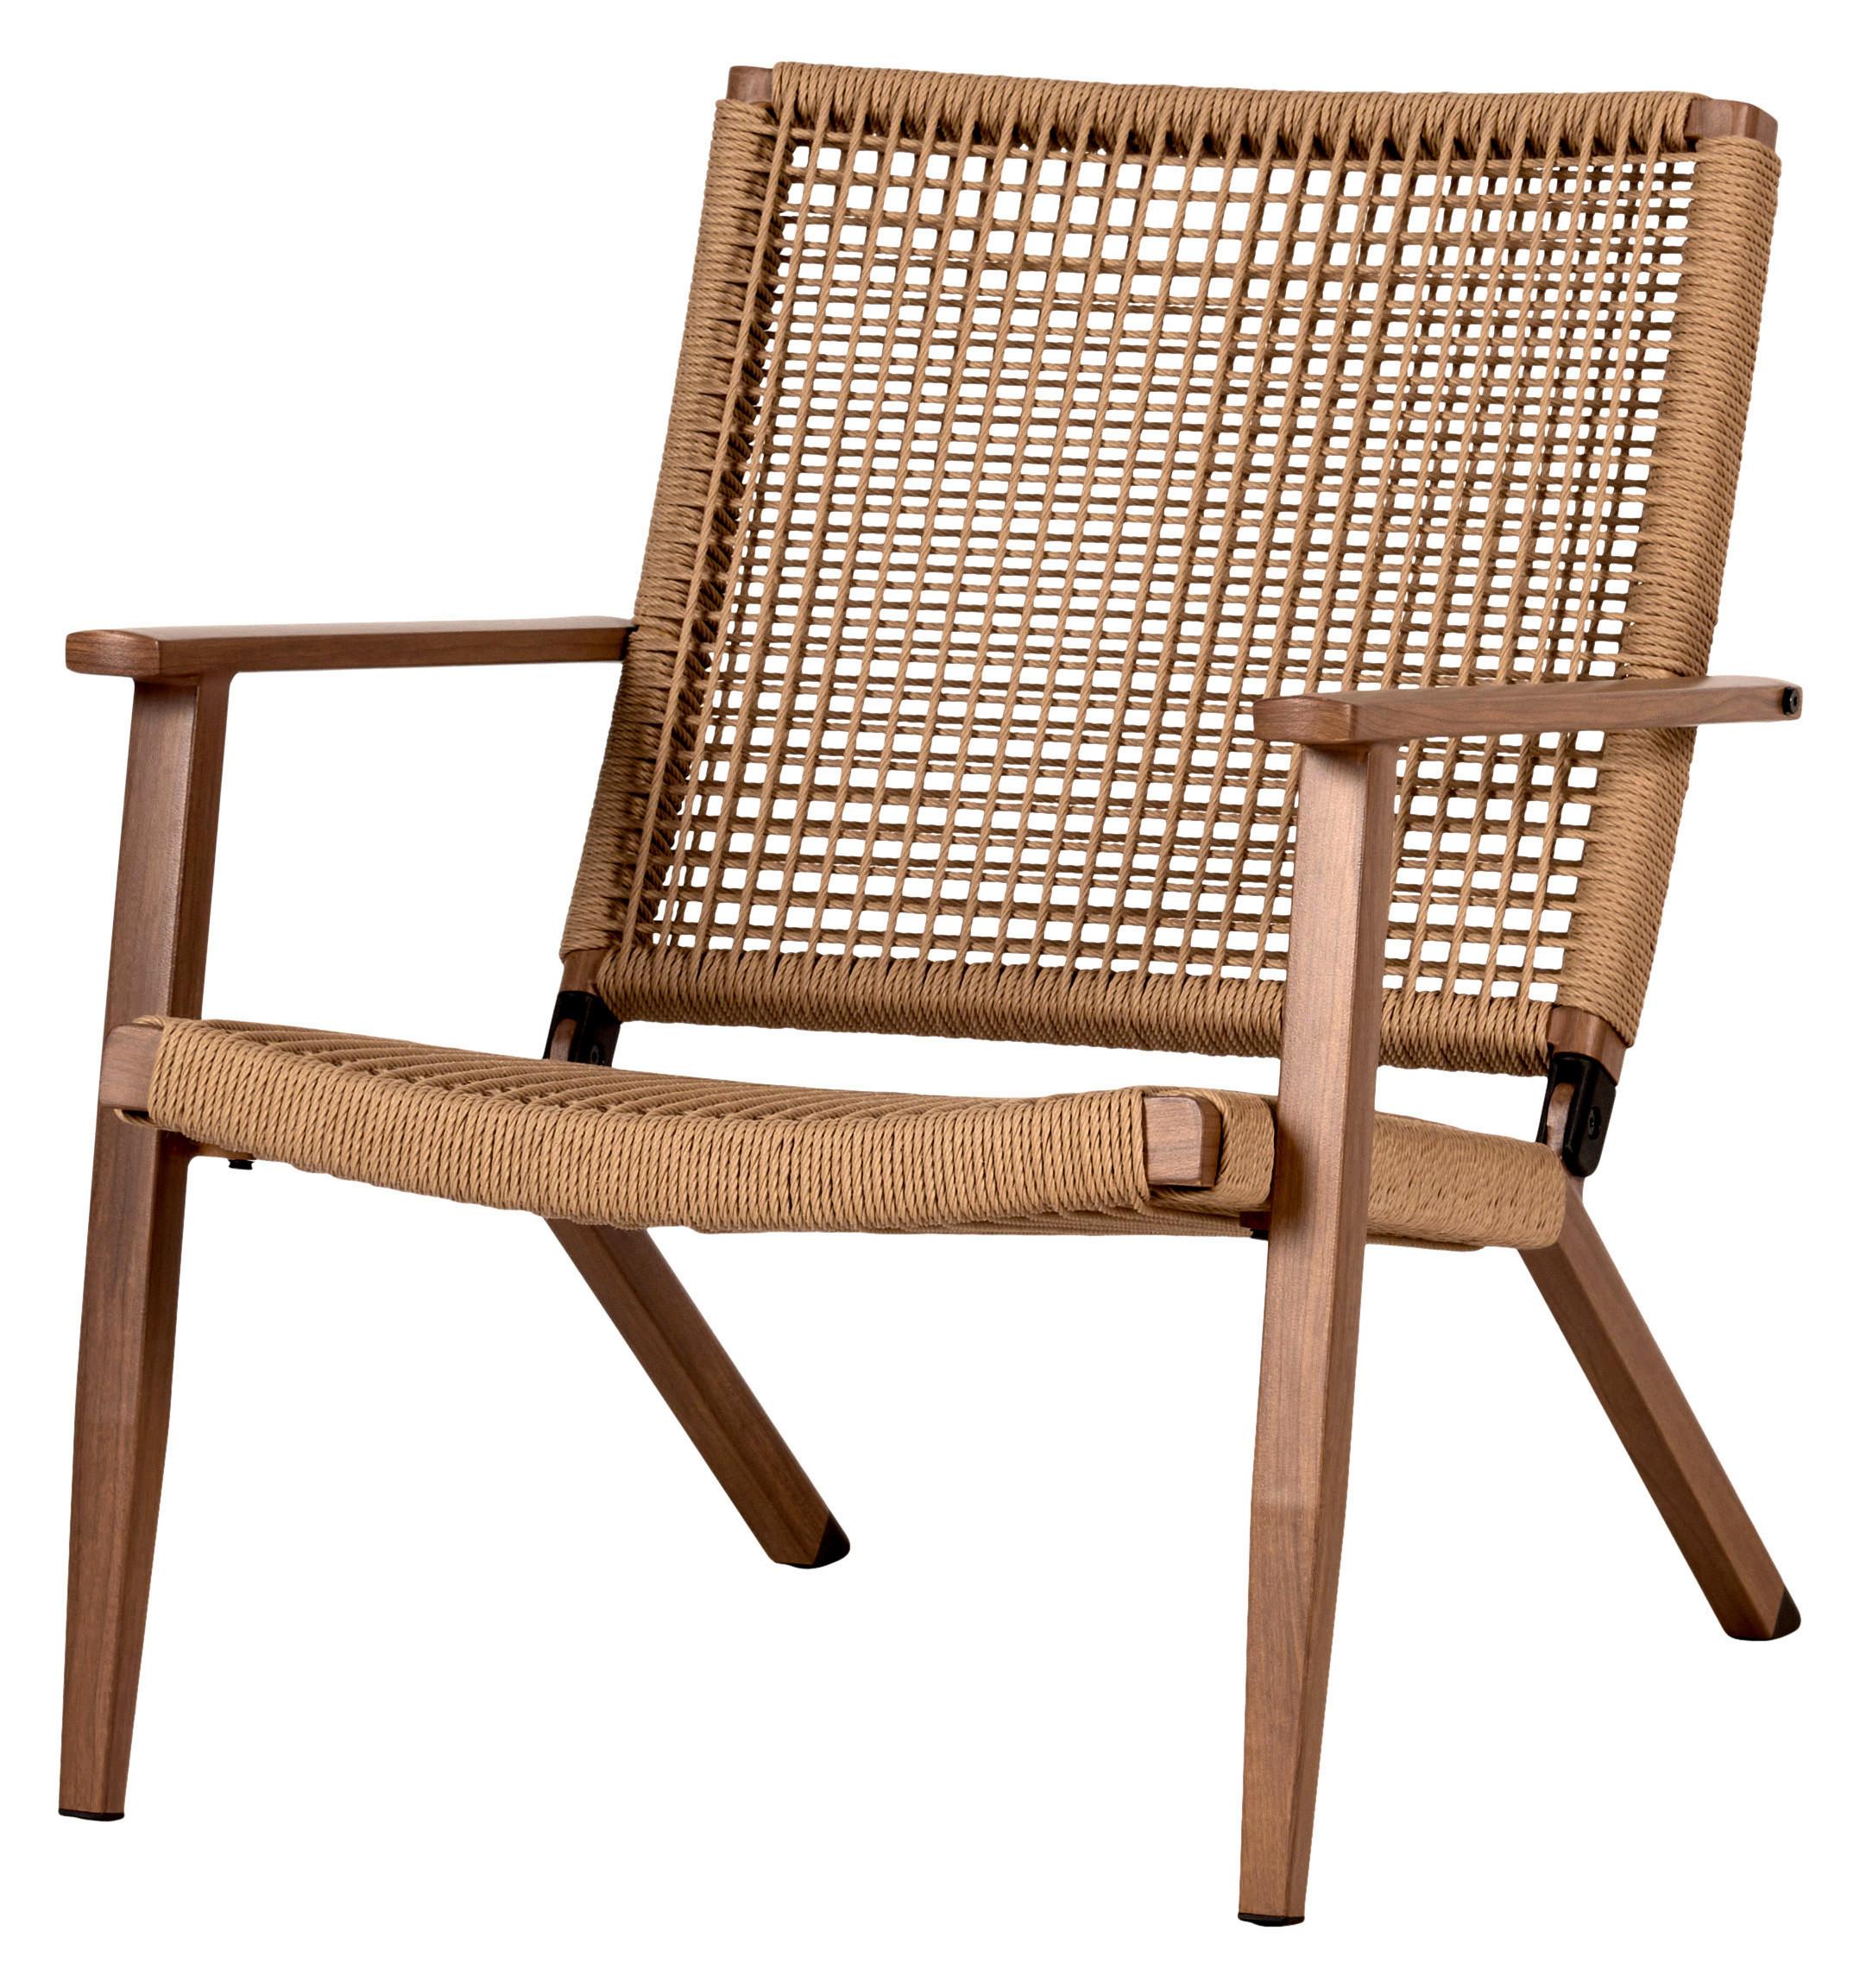 Zahradní Židle Tani - barvy teak/béžová, Natur, kov/plast (66/77/79cm)